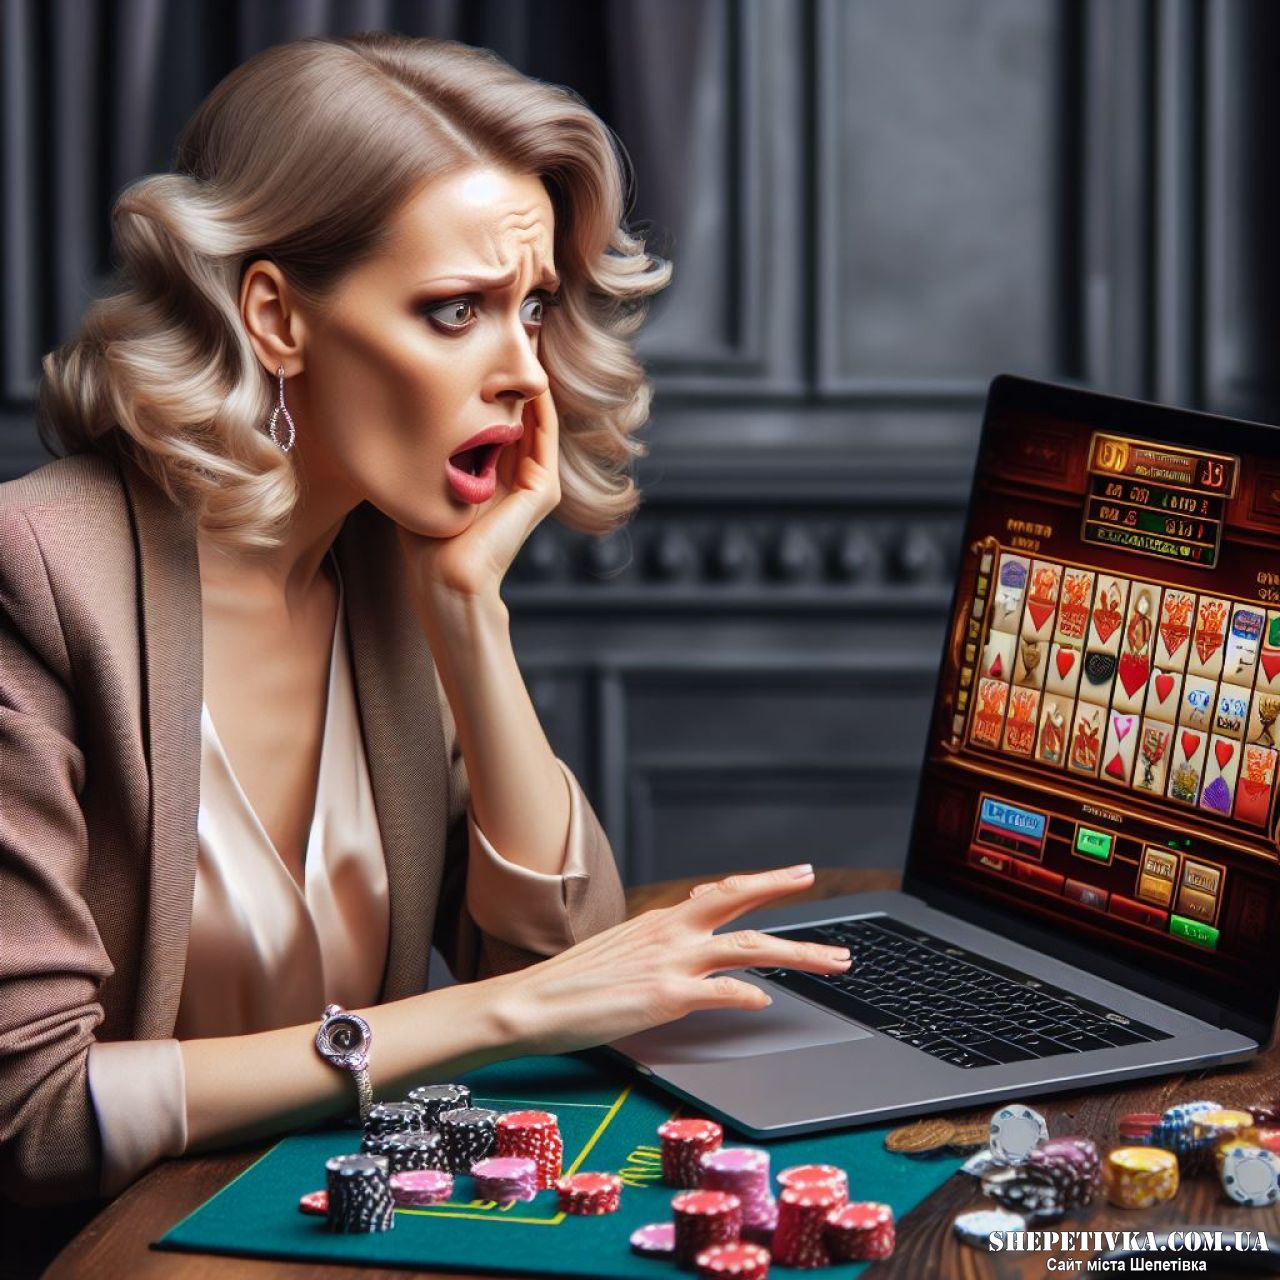 Шепетівчанка виграла у онлайн-казино 50 тис грн, тільки отримати виграш не змогла